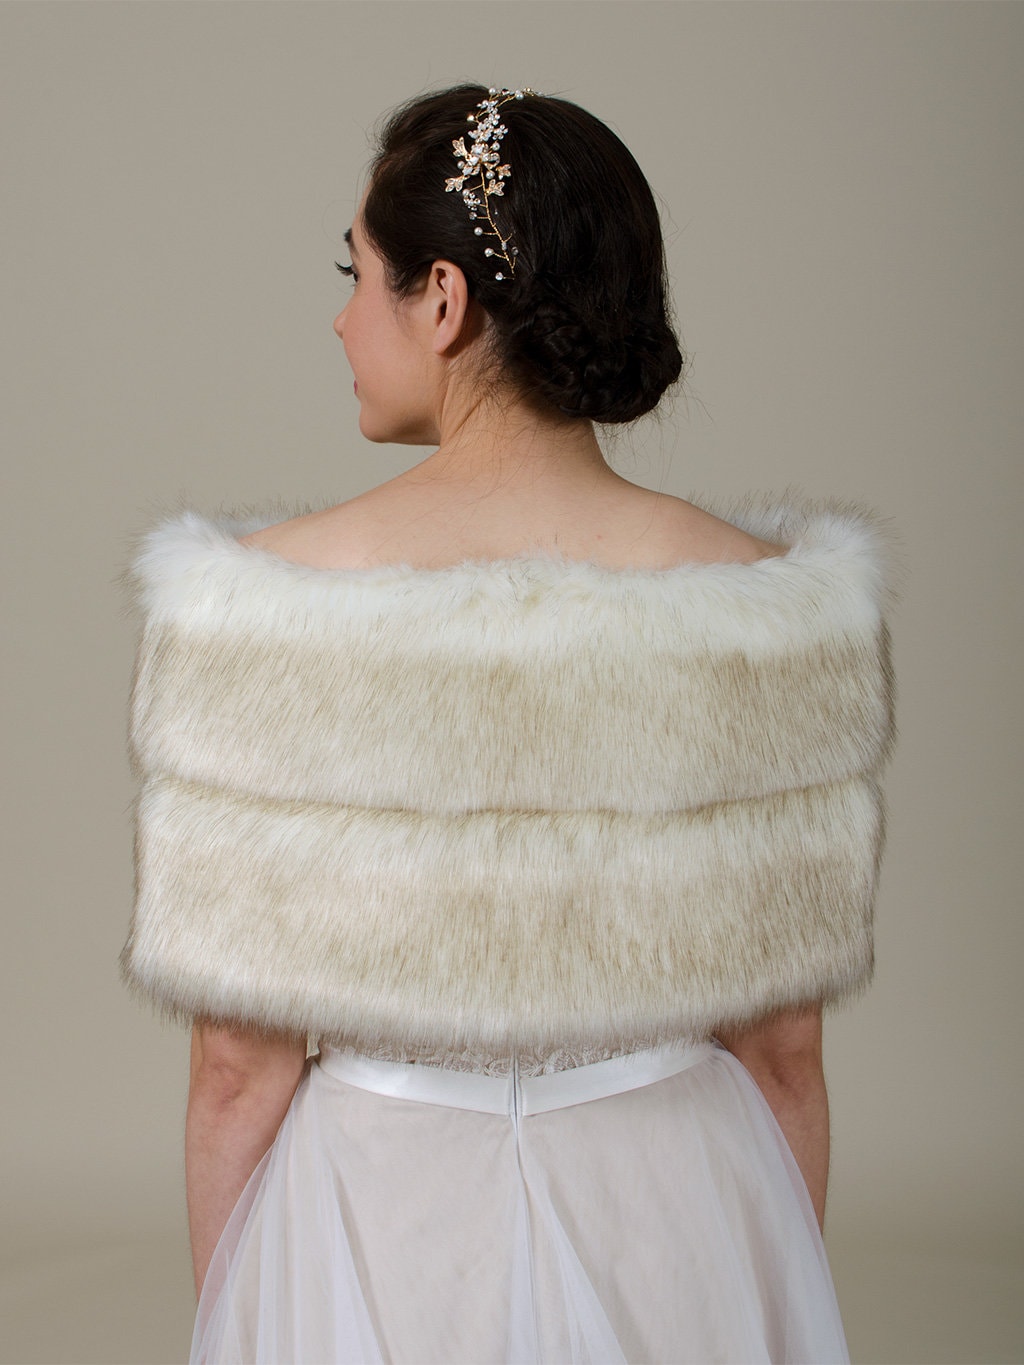 Ivory faux fur wrap faux fur stole faux fur shawl bridal wrap wedding shrug bridal shrug with dark tips B003-Ivory-dark-tips